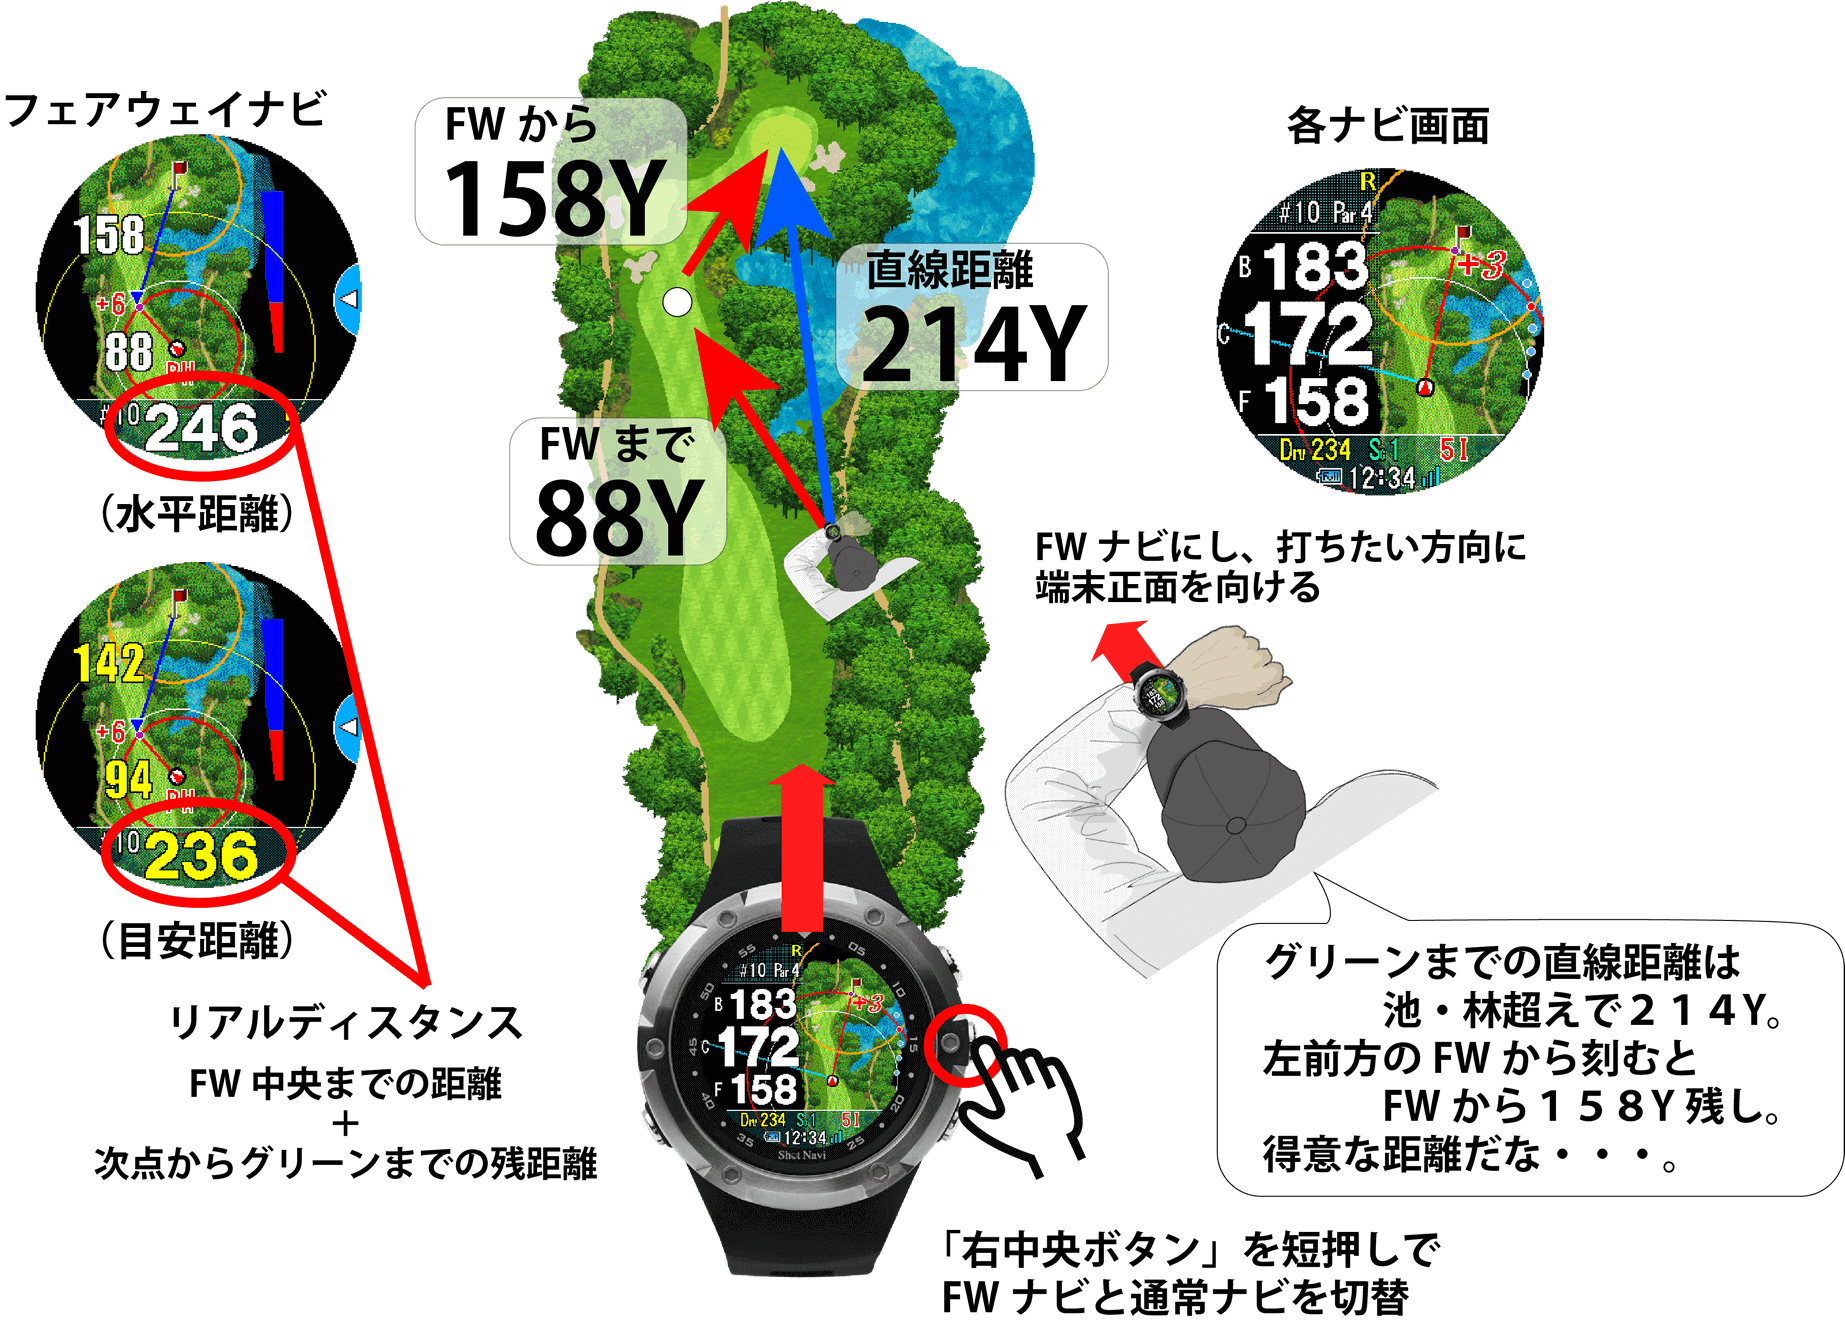 19995円 【ラッピング無料】 テクタイトショットナビ 腕時計型GPSナビ Shot Navi W1-EVOLVE-BK GOLF-SALE